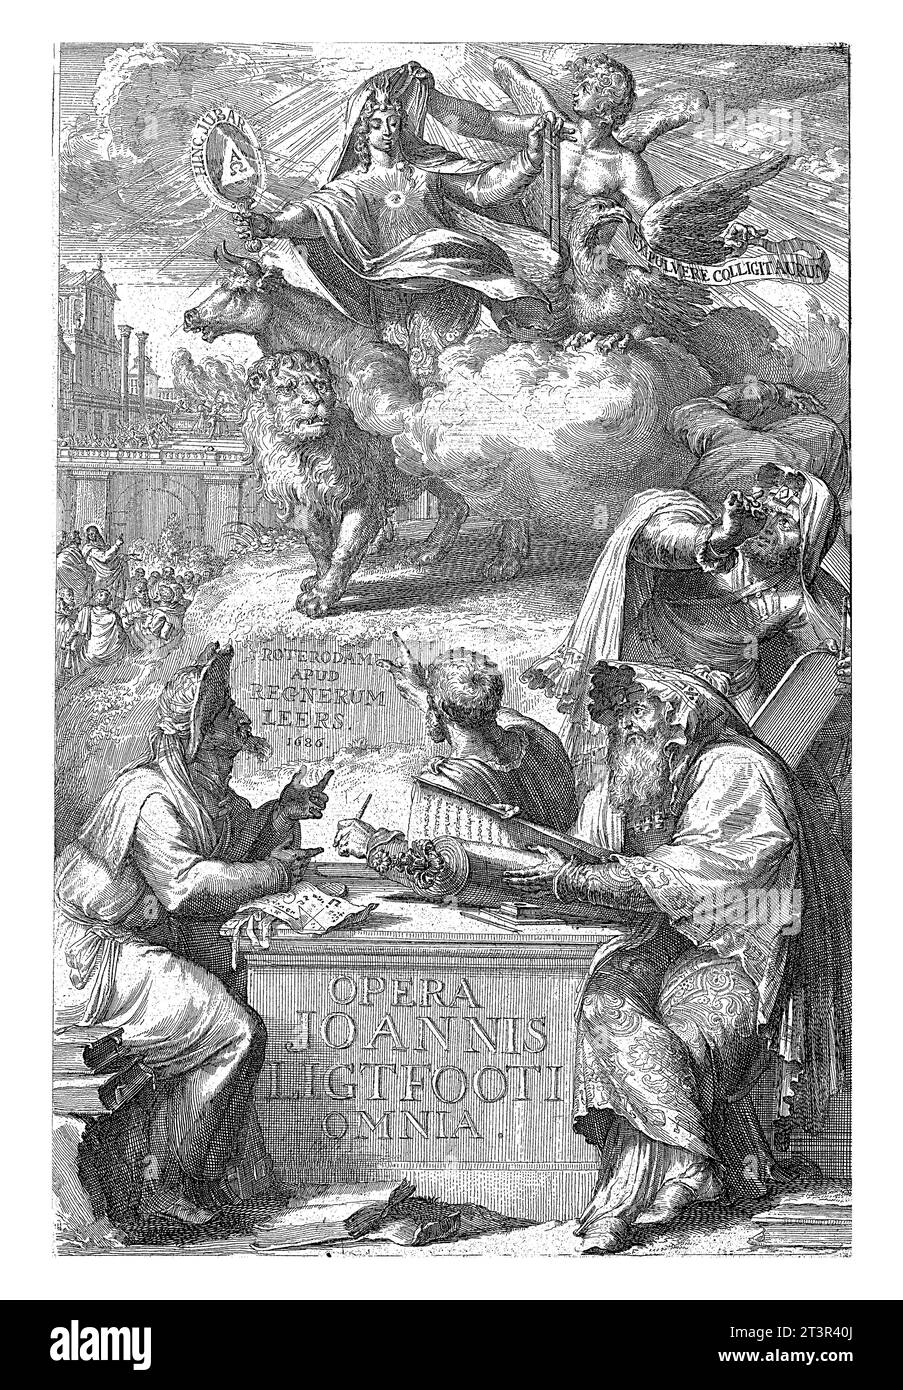 Stampa del titolo di "Opera omnia" di John Lightfoot, Romeyn de Hooghe, 1686 Un gentiluomo ebreo, circondato da altri tre uomini, siede vicino a un piedistallo o ston Foto Stock